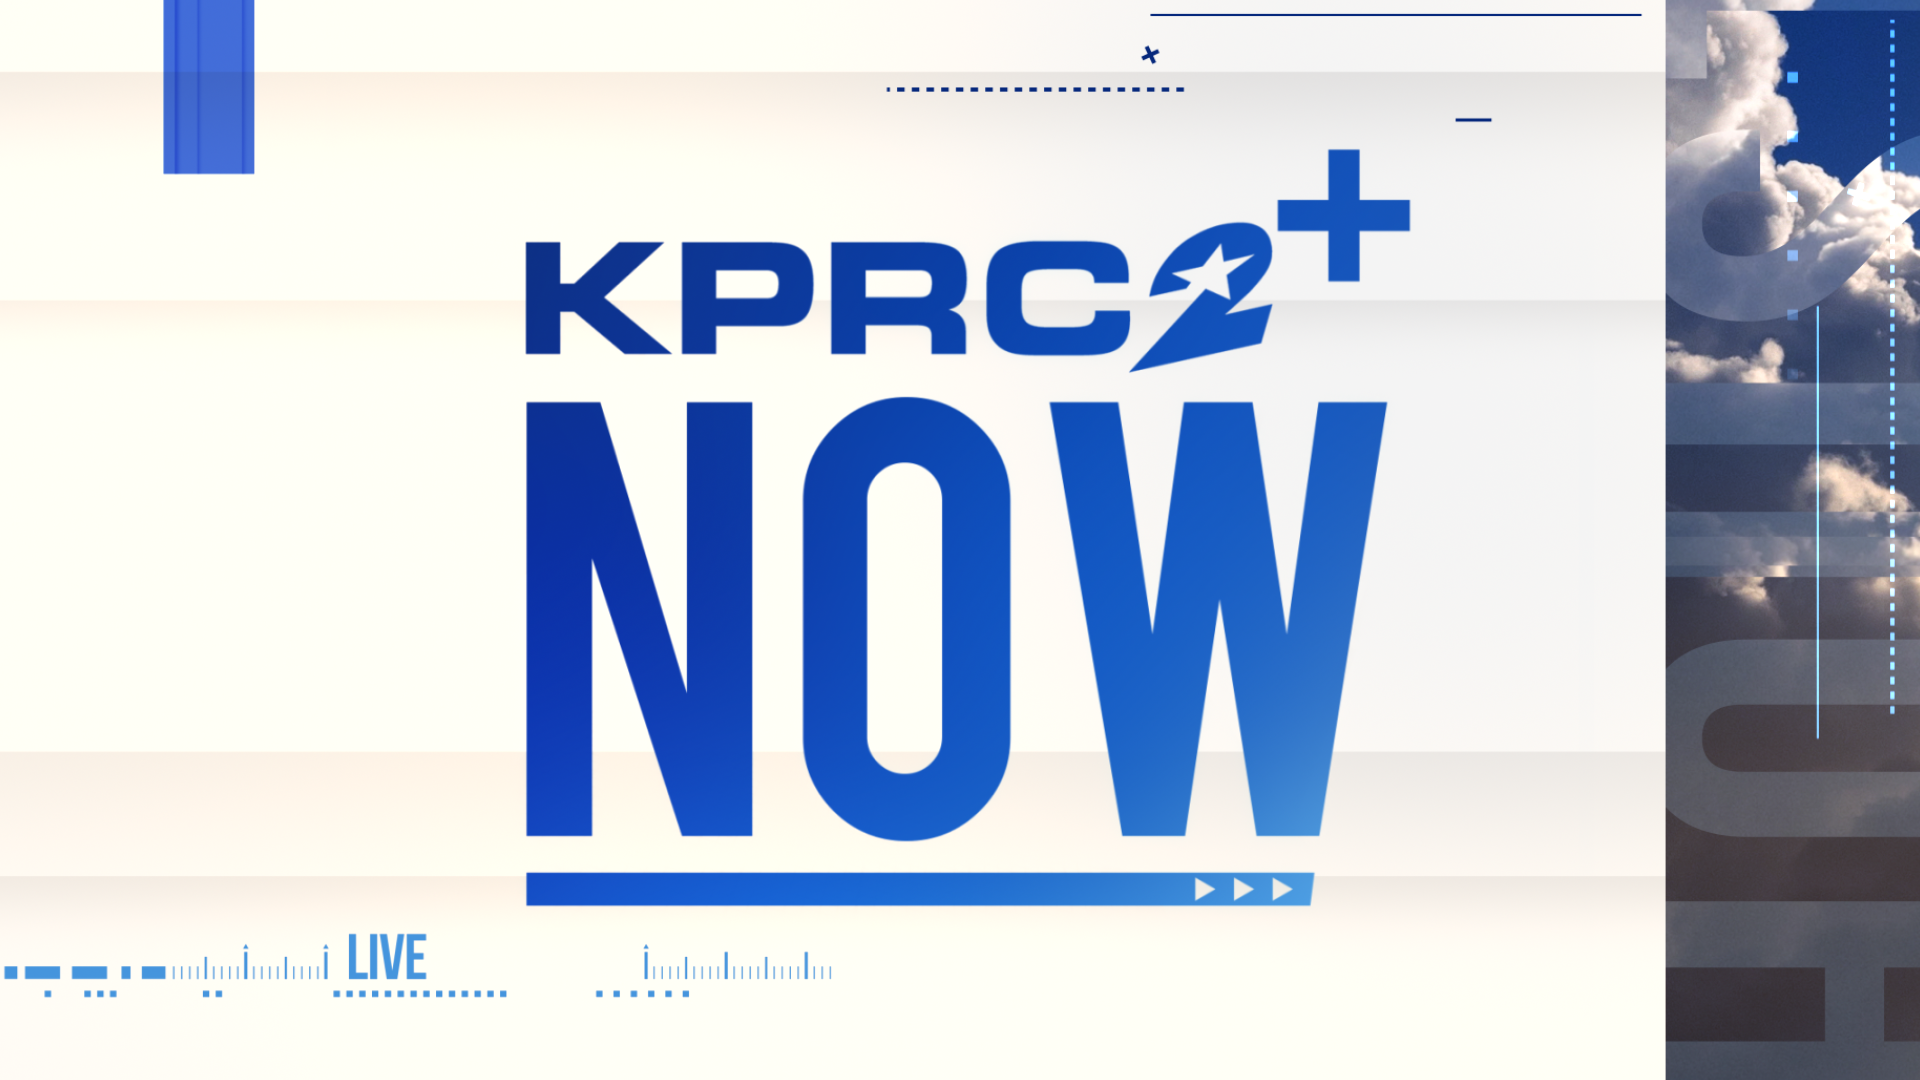 KPRC 2+ Now